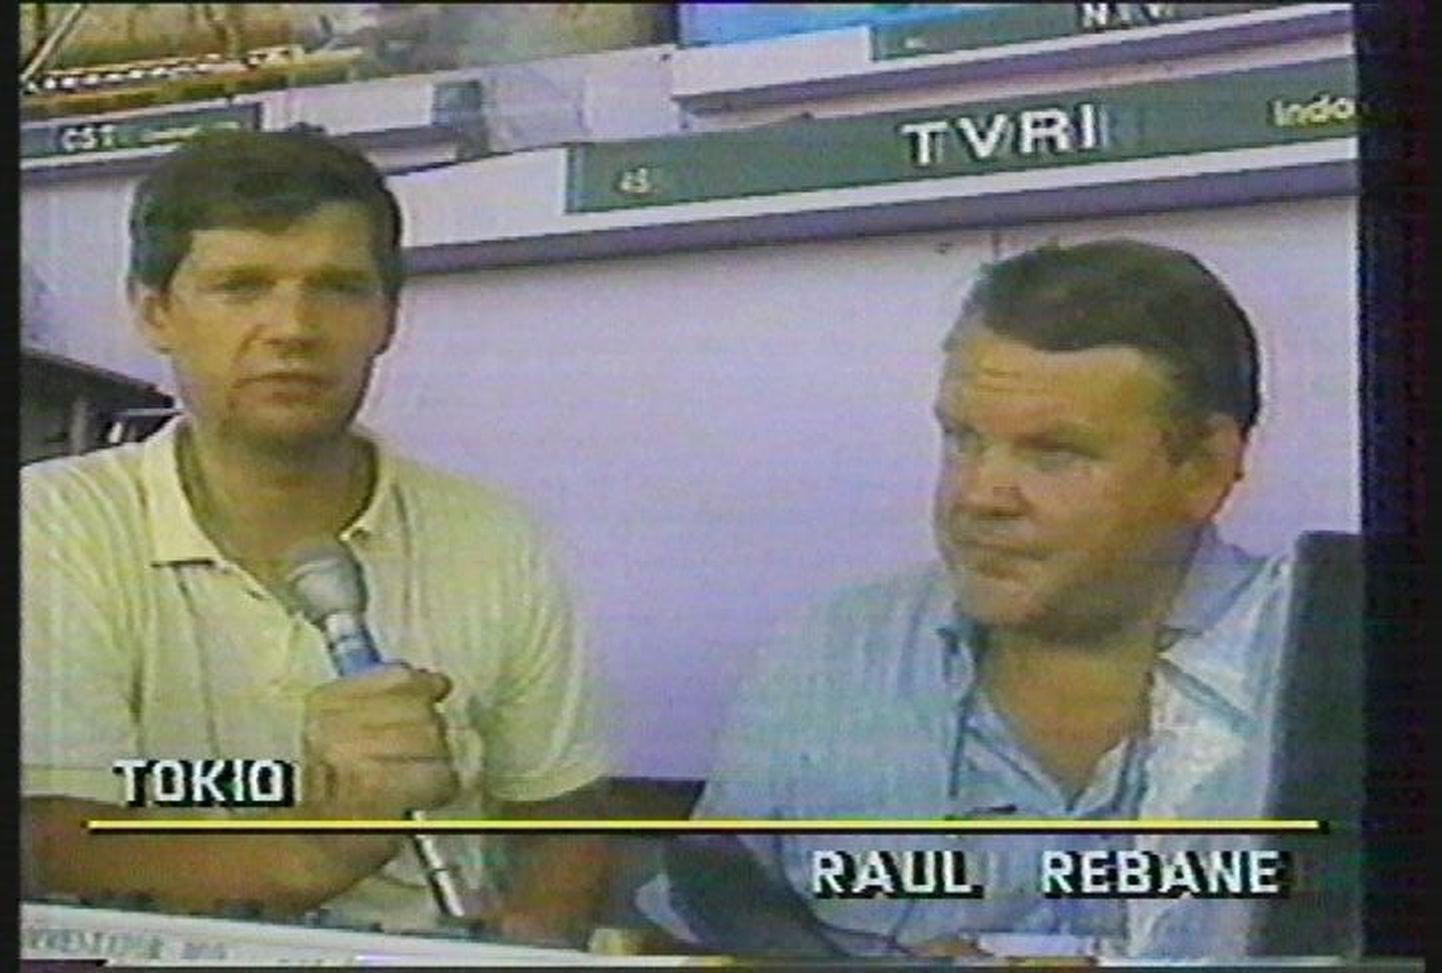 Toonased ETV spordireporterid Raul Rebane ja Toomas Uba (1943–2000) Tokyo MMil tegemas iseseisva Eesti esimest välisreportaaži.